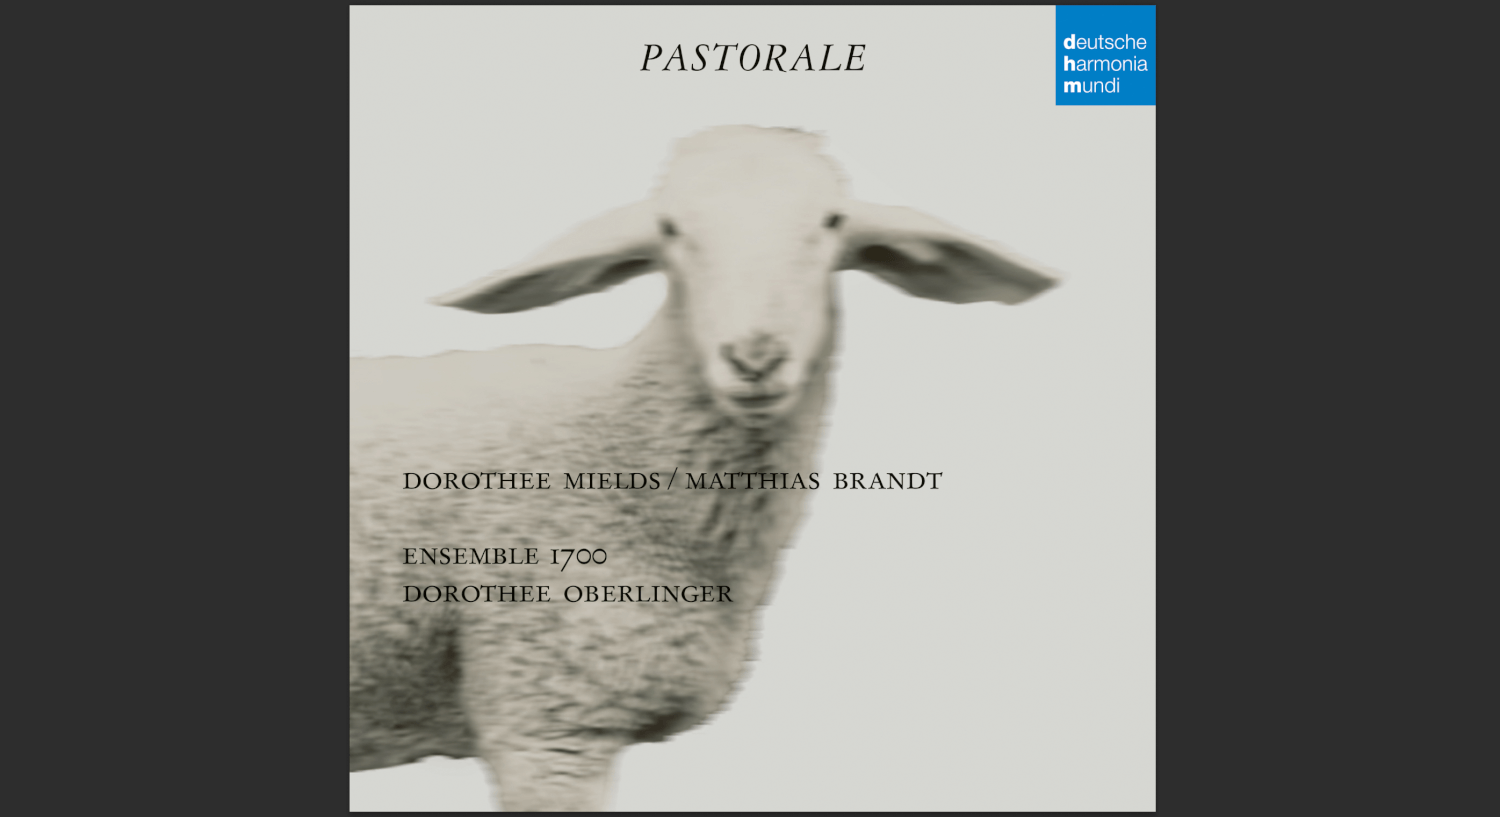 Ensemble 1700, Dorothee Oberlinger: „Pastorale“